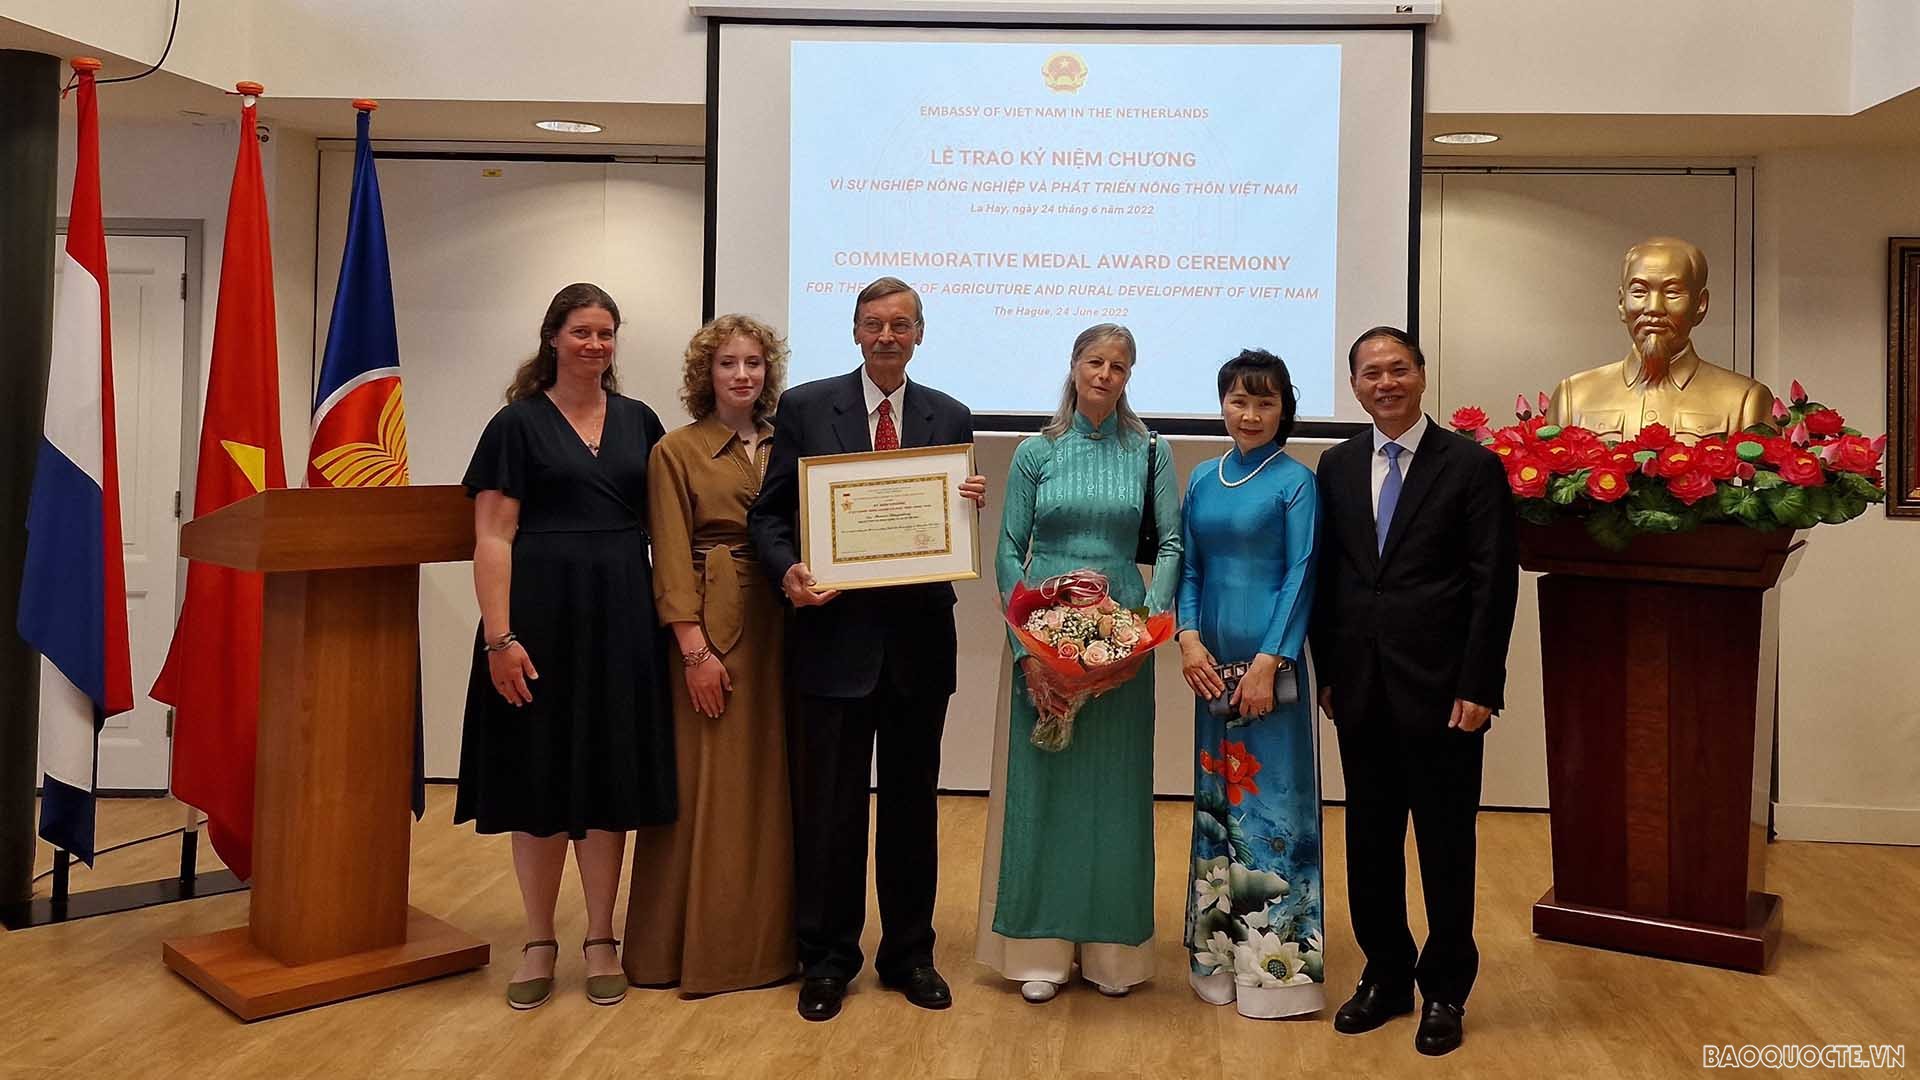 Đại sứ Phạm Việt Anh trao kỷ niệm chương và tặng hoa chúc mừng ông Marcus Slingenberg và gia đình.